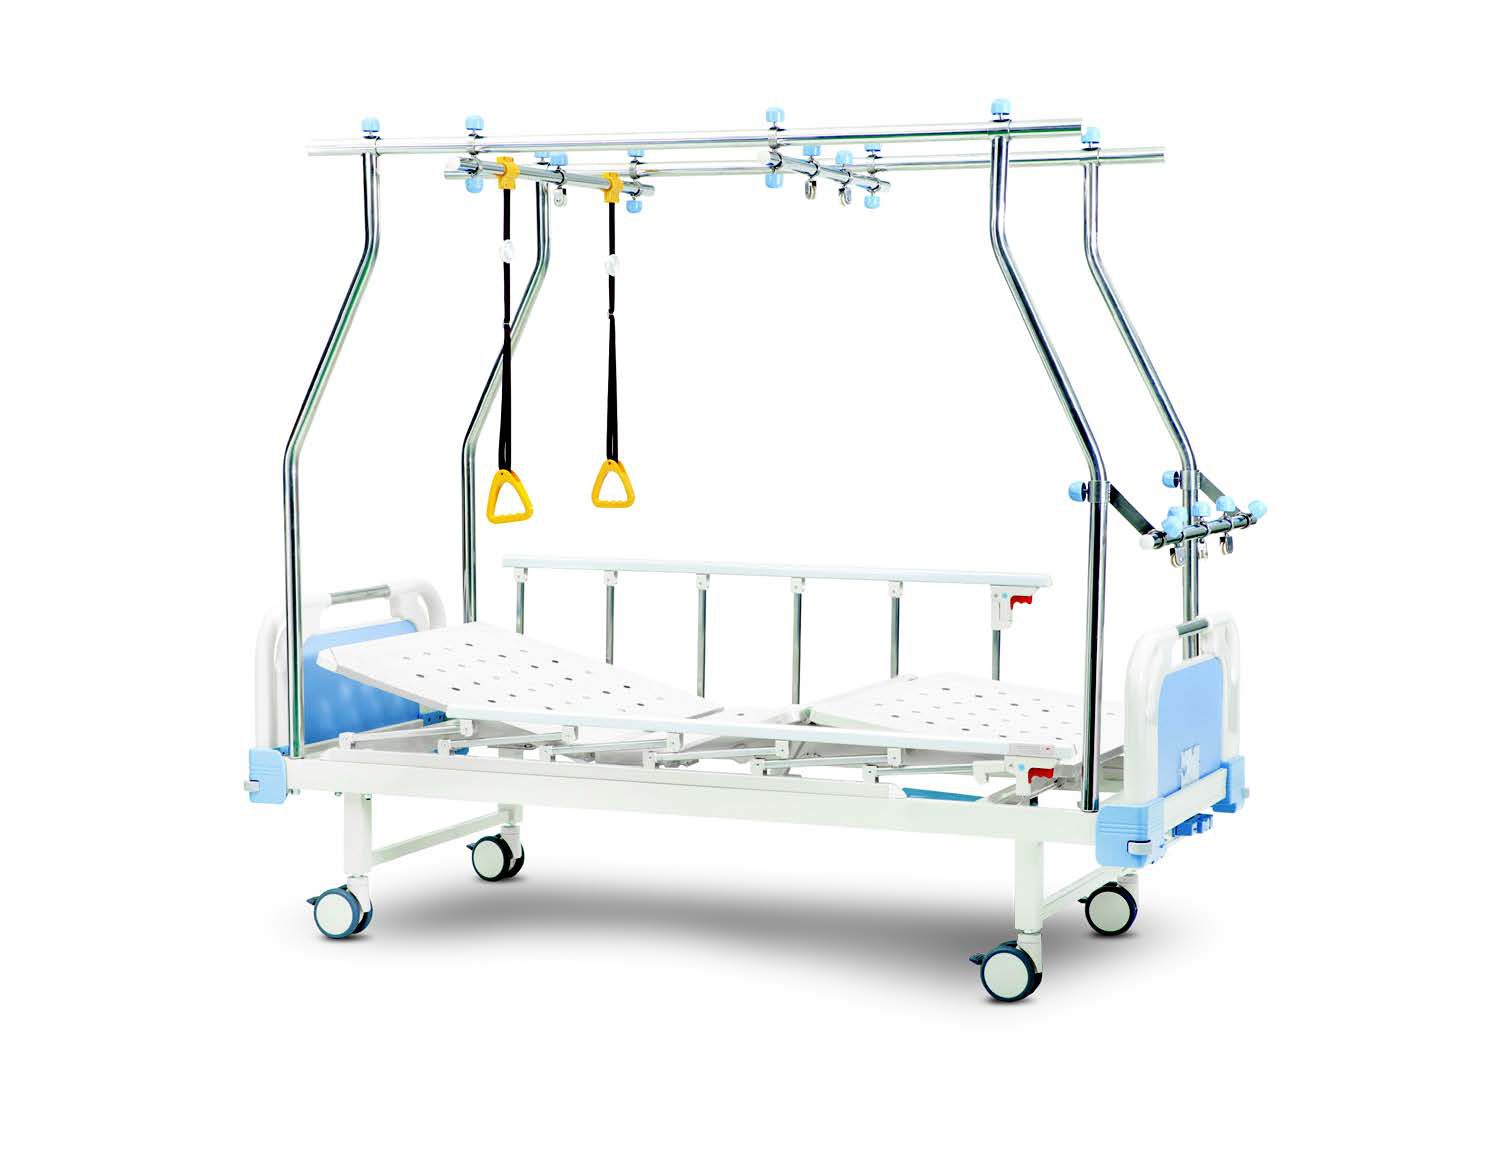 Кровать BLT 8538 G-16 с рамой Балканского (тракционная кровать) медицинская механическая, 2 функции